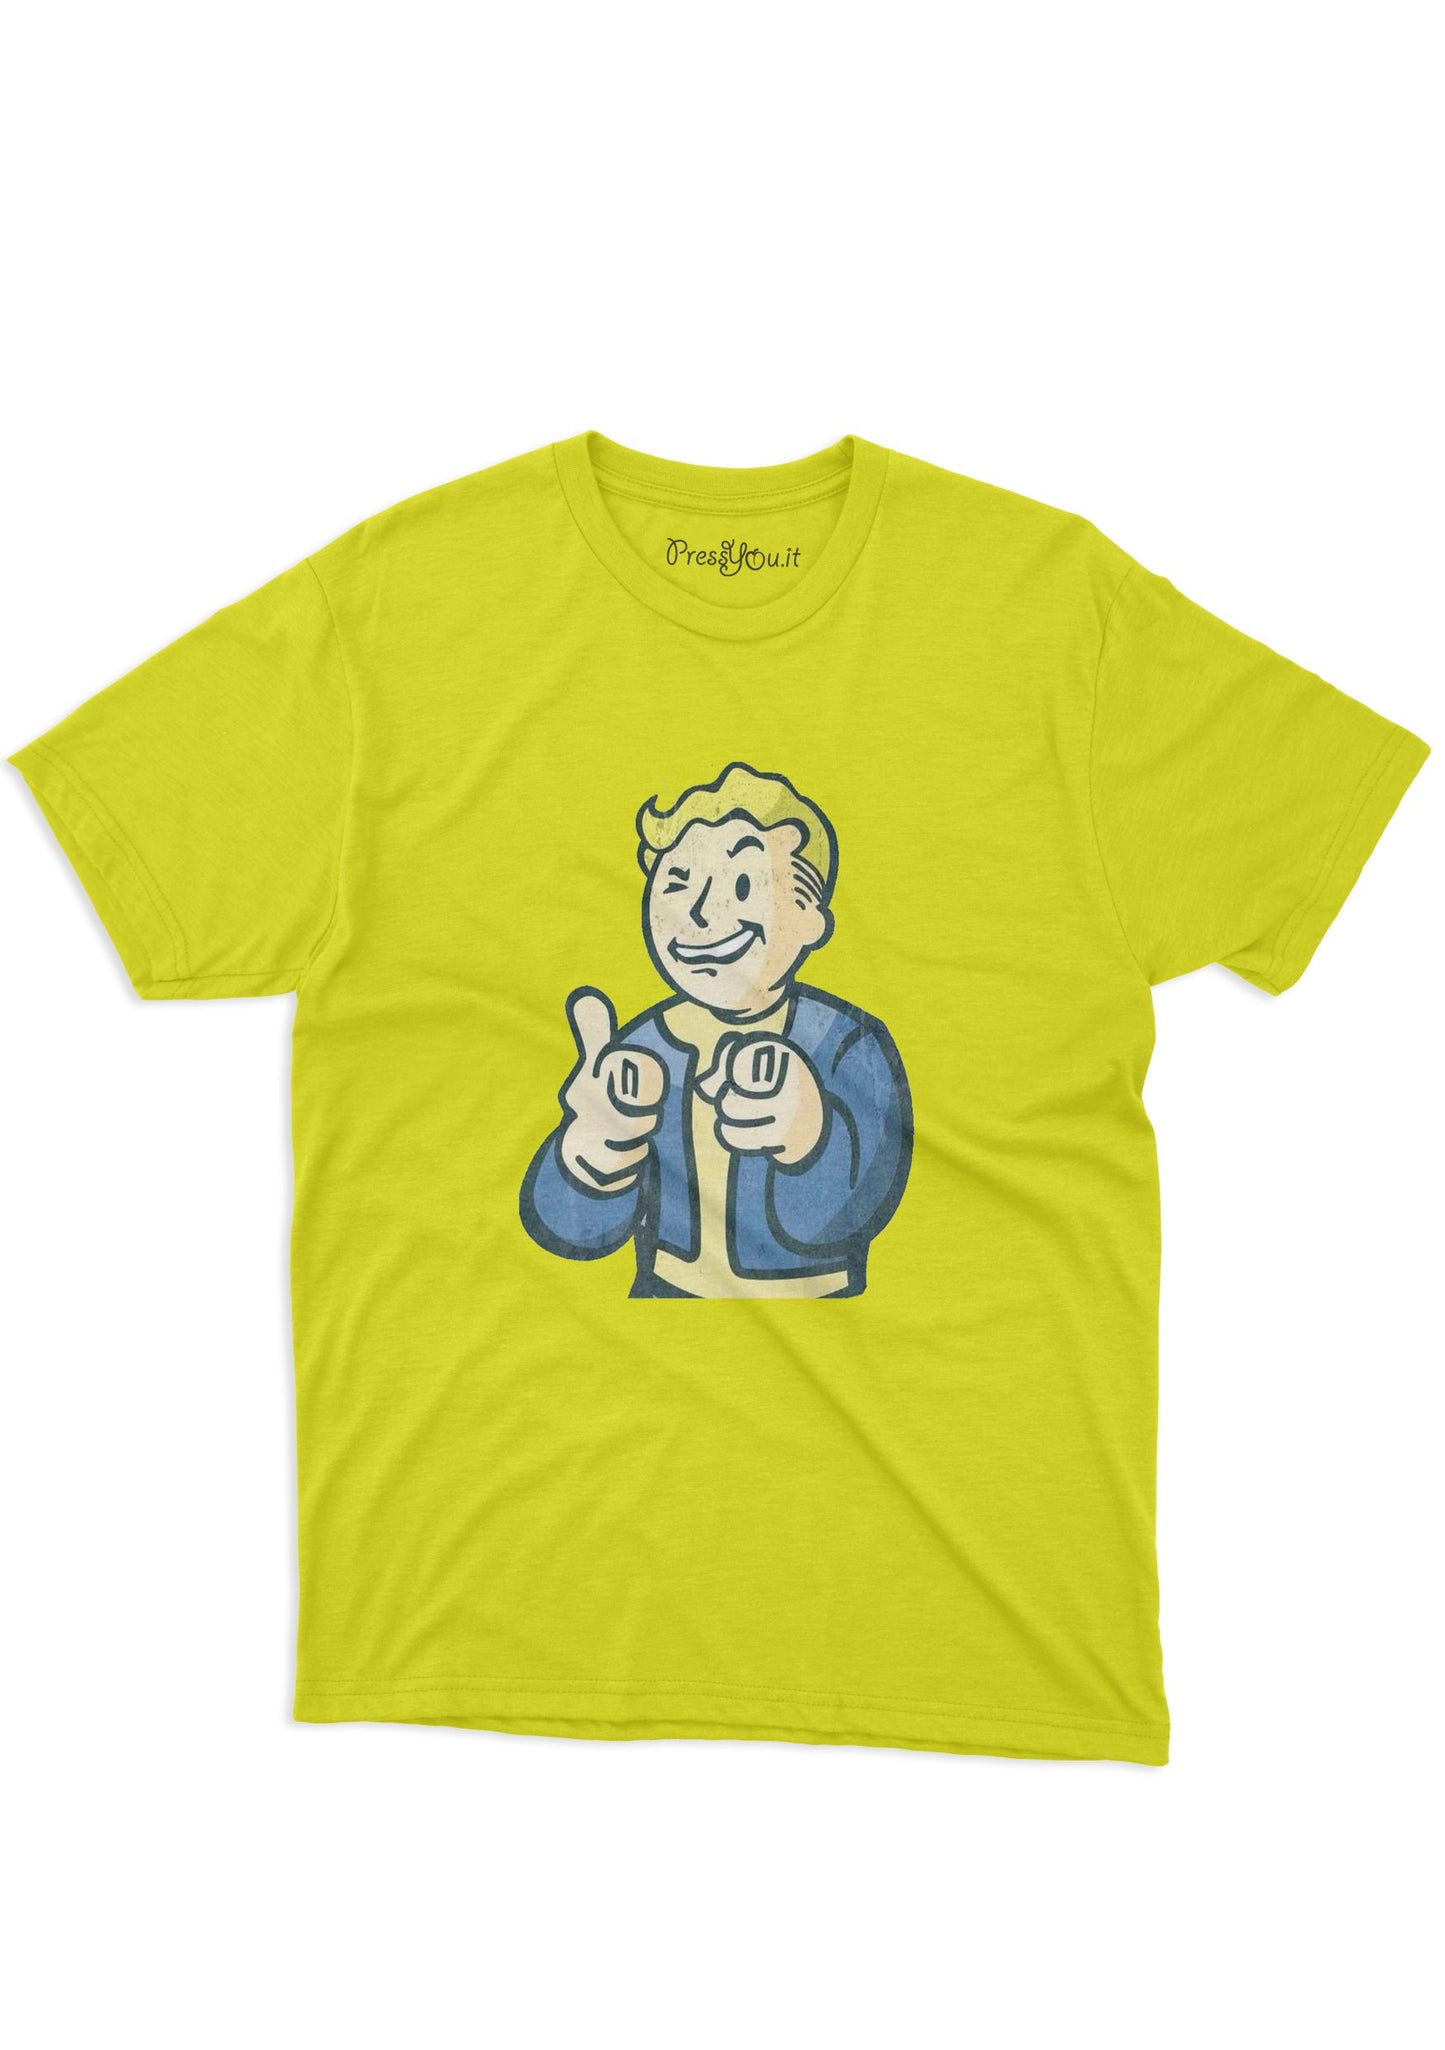 maglietta t-shirt- boy nucleare tranquillo